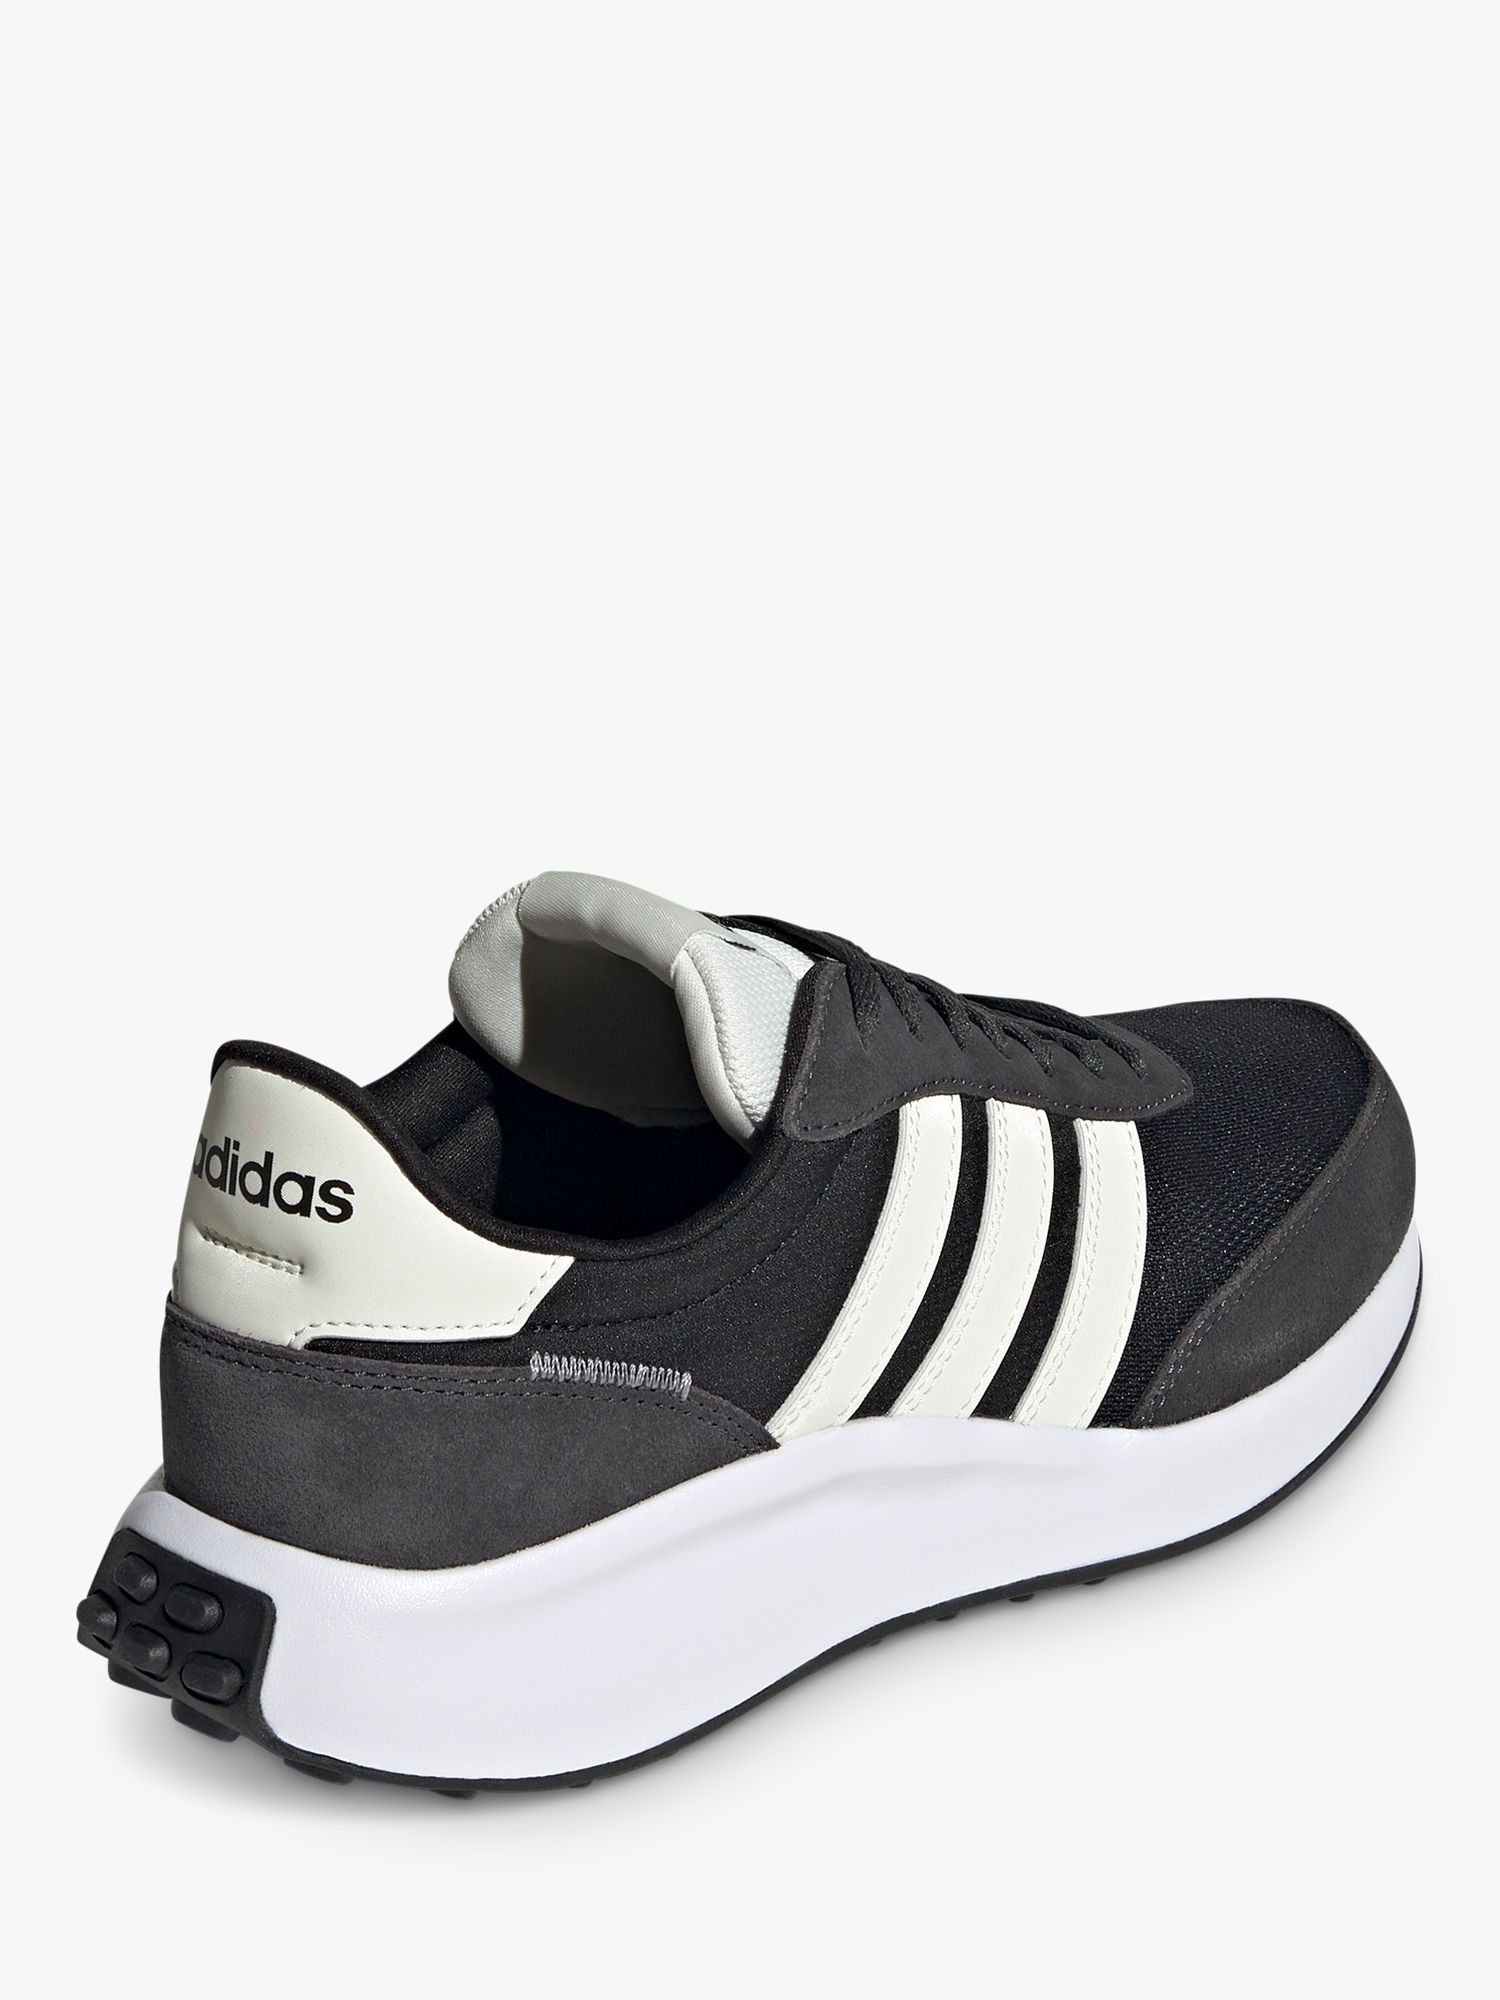 adidas Run 70s Trainers, Black/white, 6.5